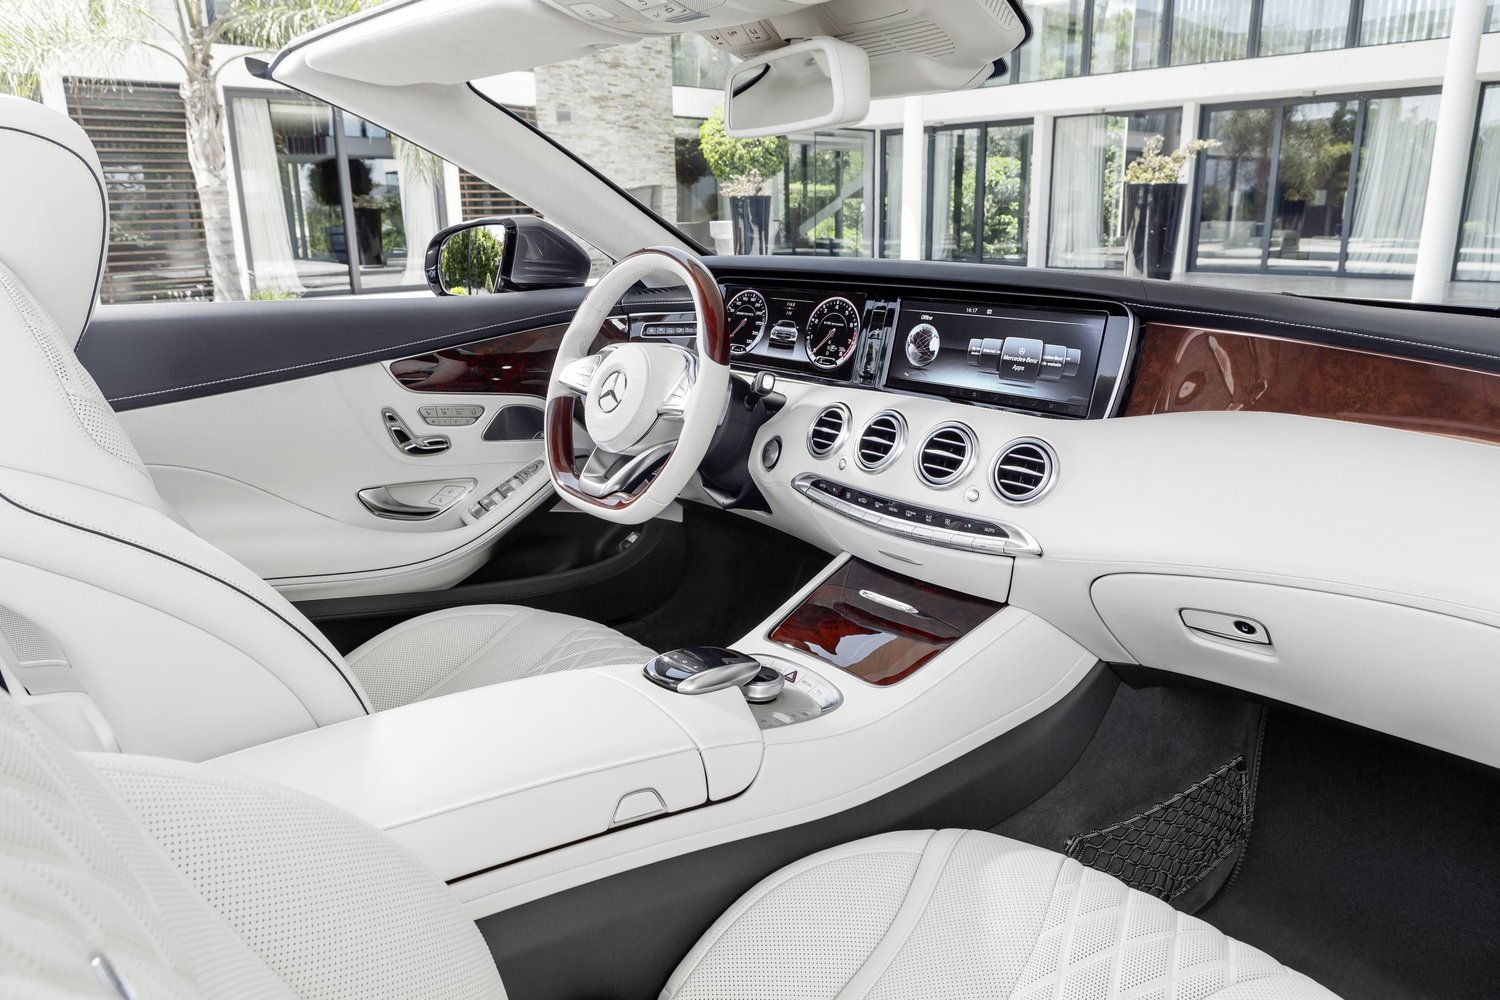 кабриолет Mercedes-Benz S-klasse 2013 - 2016г выпуска модификация S500 4.7 AT (455 л.с.)